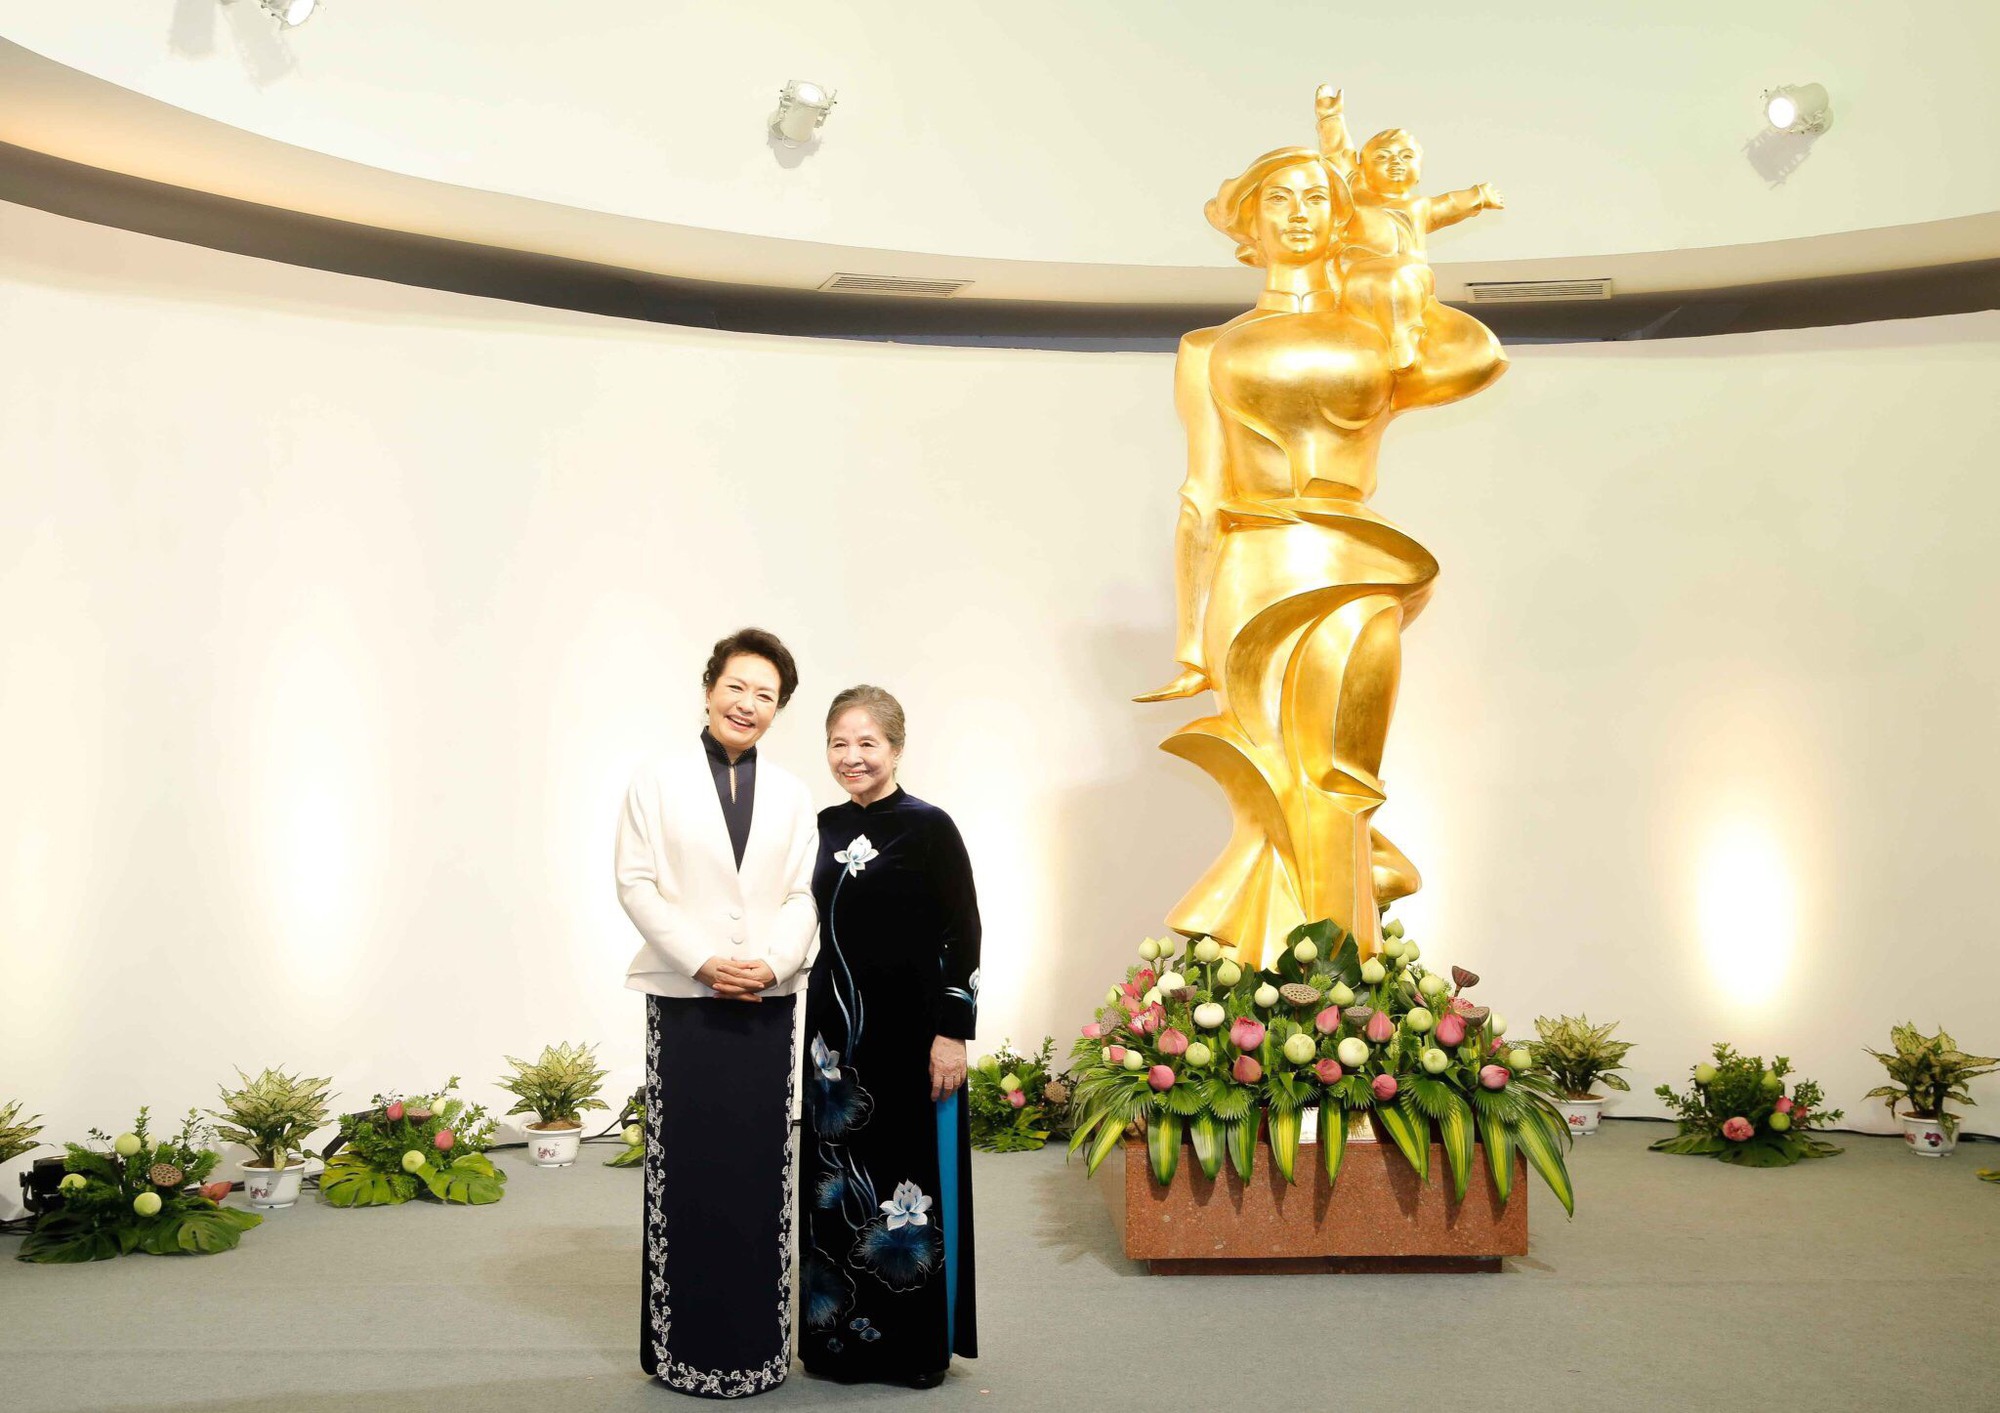 Phu nhân hai Tổng Bí thư cùng thưởng trà, thăm Bảo tàng Phụ nữ Việt Nam  - Ảnh 1.